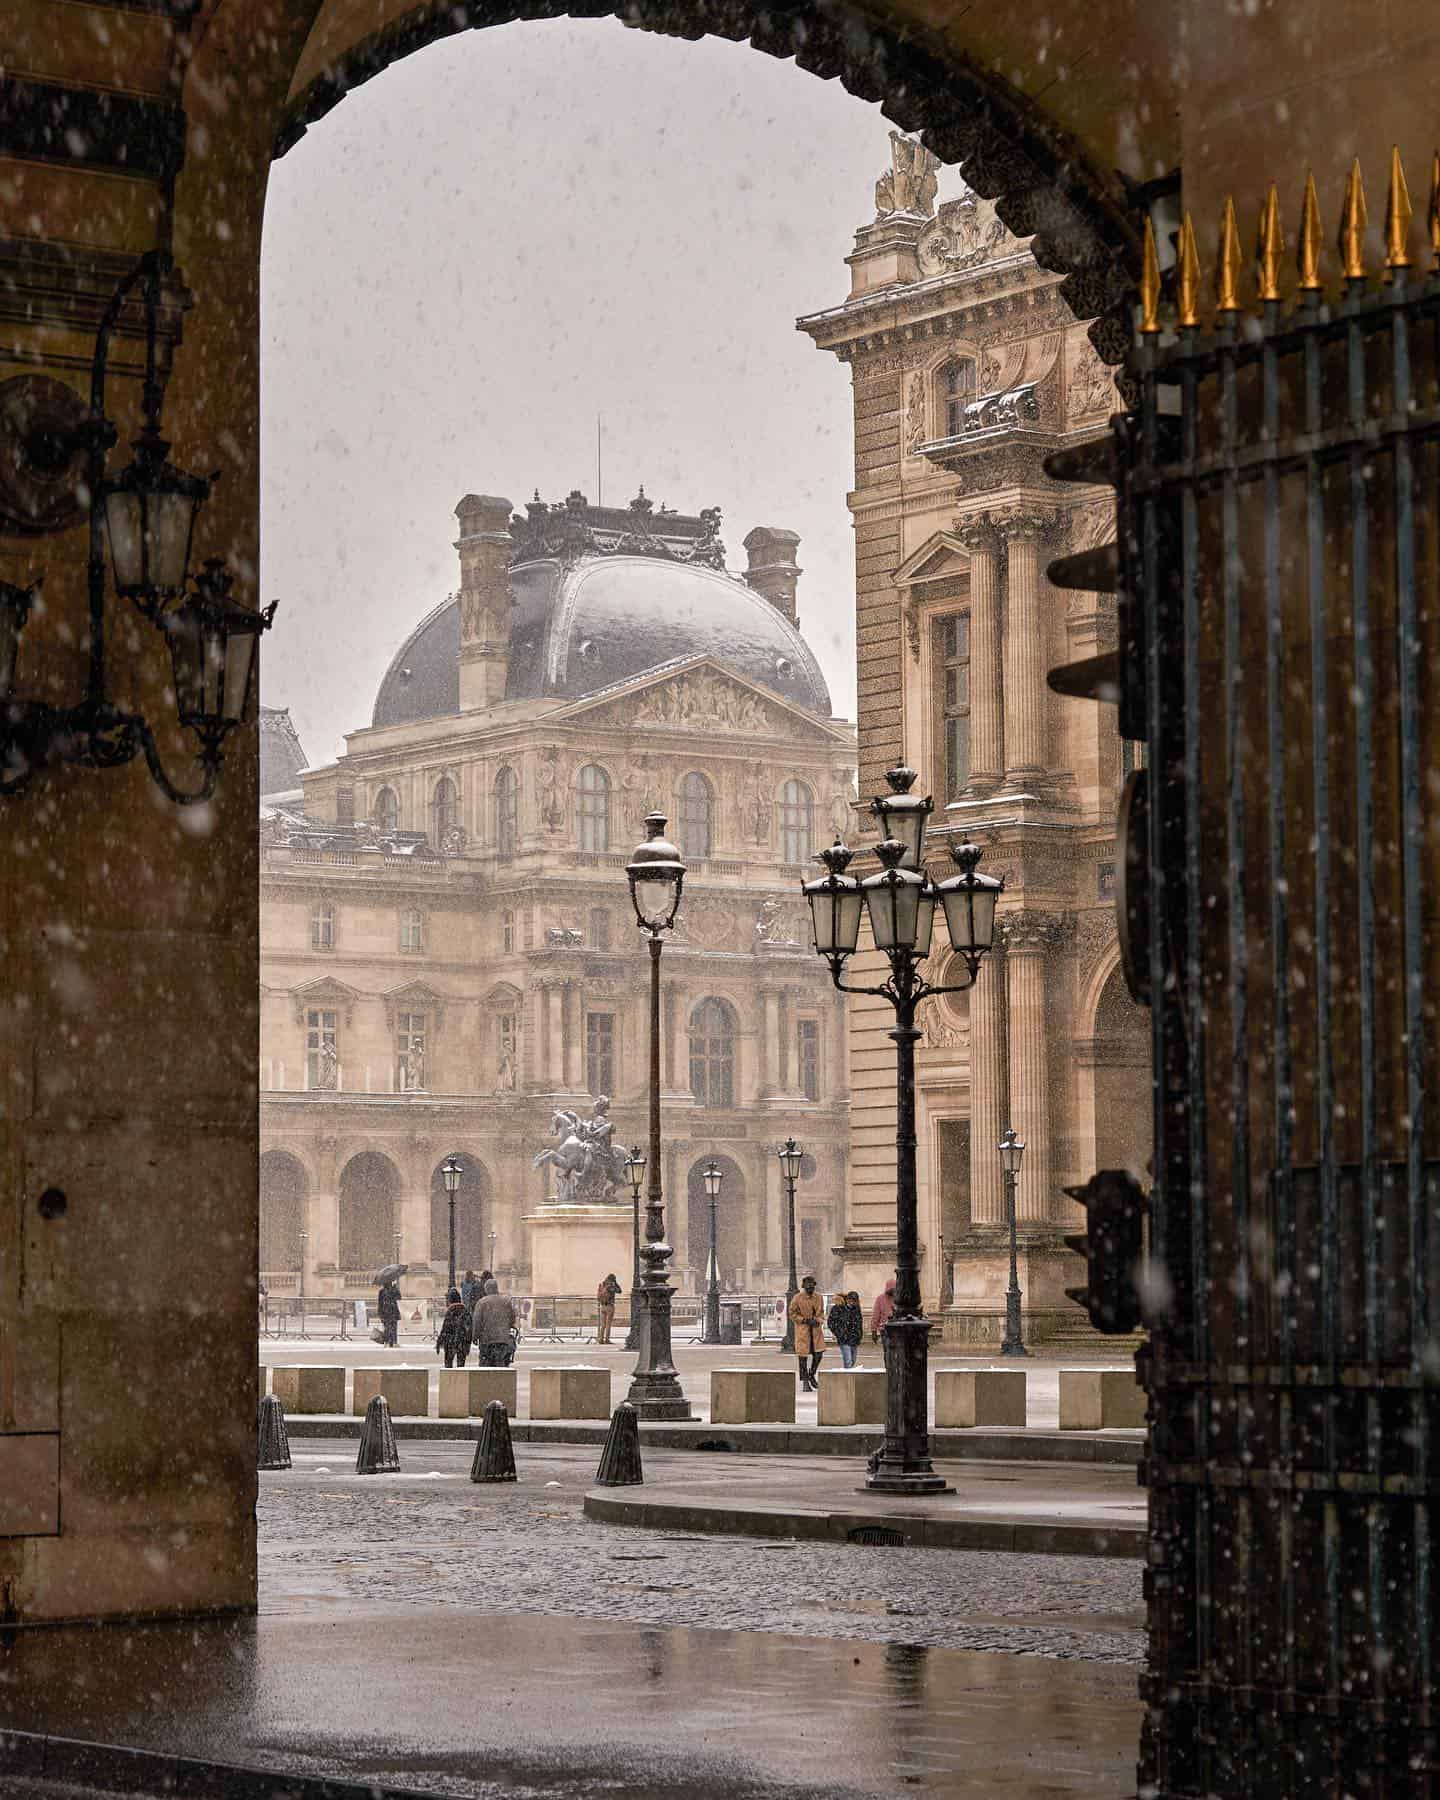 Paris while it's snowing at Musée du Louvre